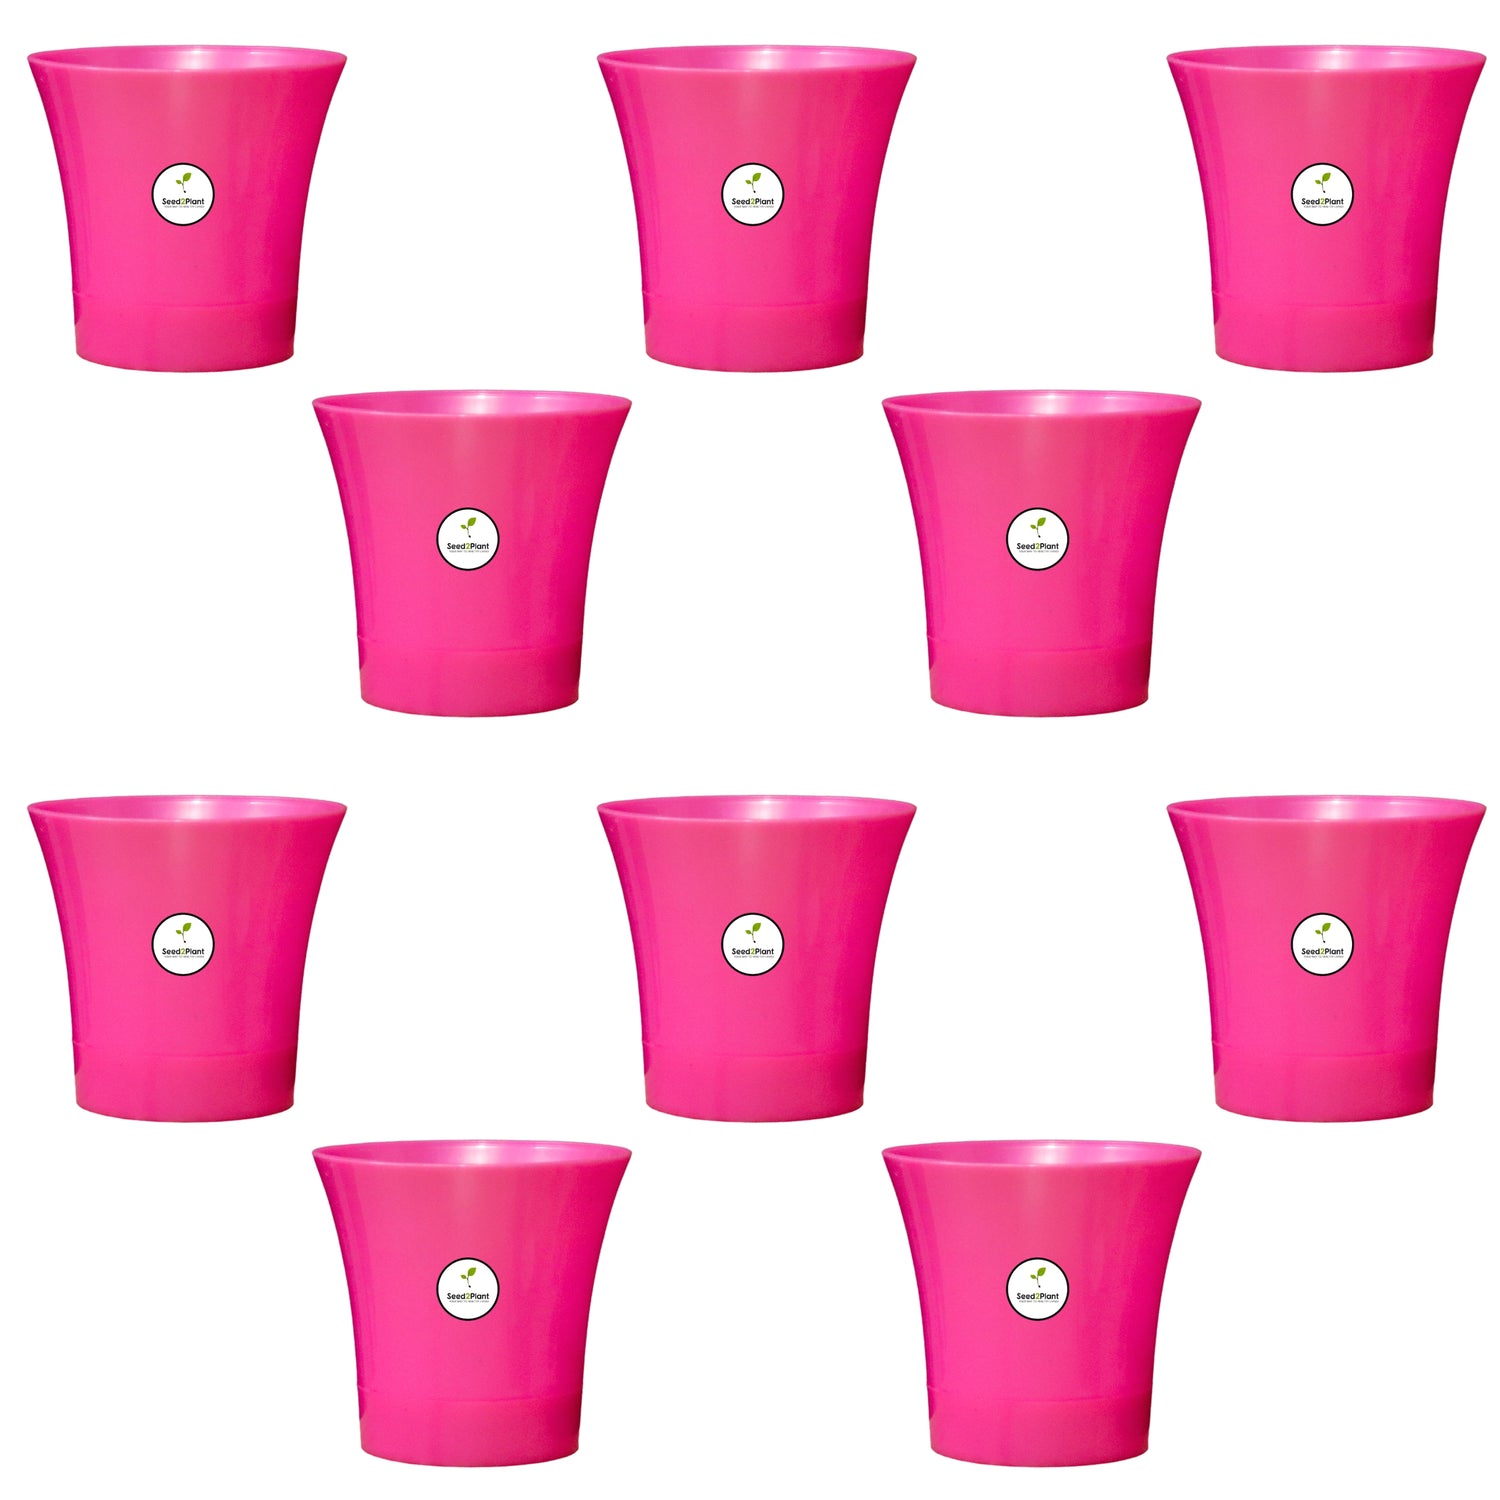 Self Watering Indoor Plastic Pot - Pink Colour